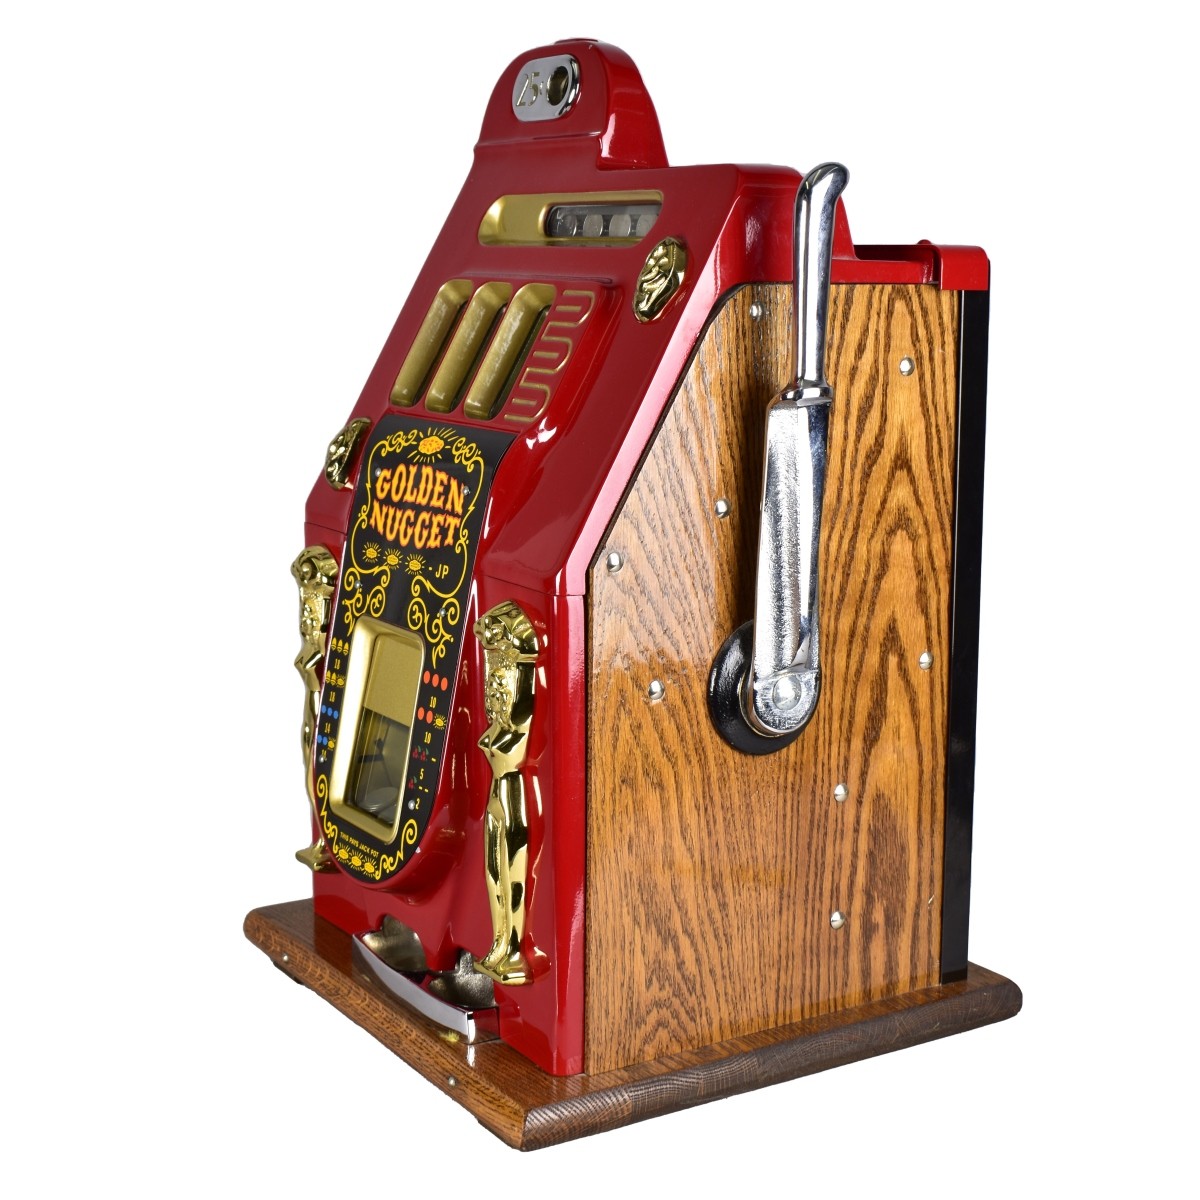 Mills 25 Cent Golden Nugget Slot Machine